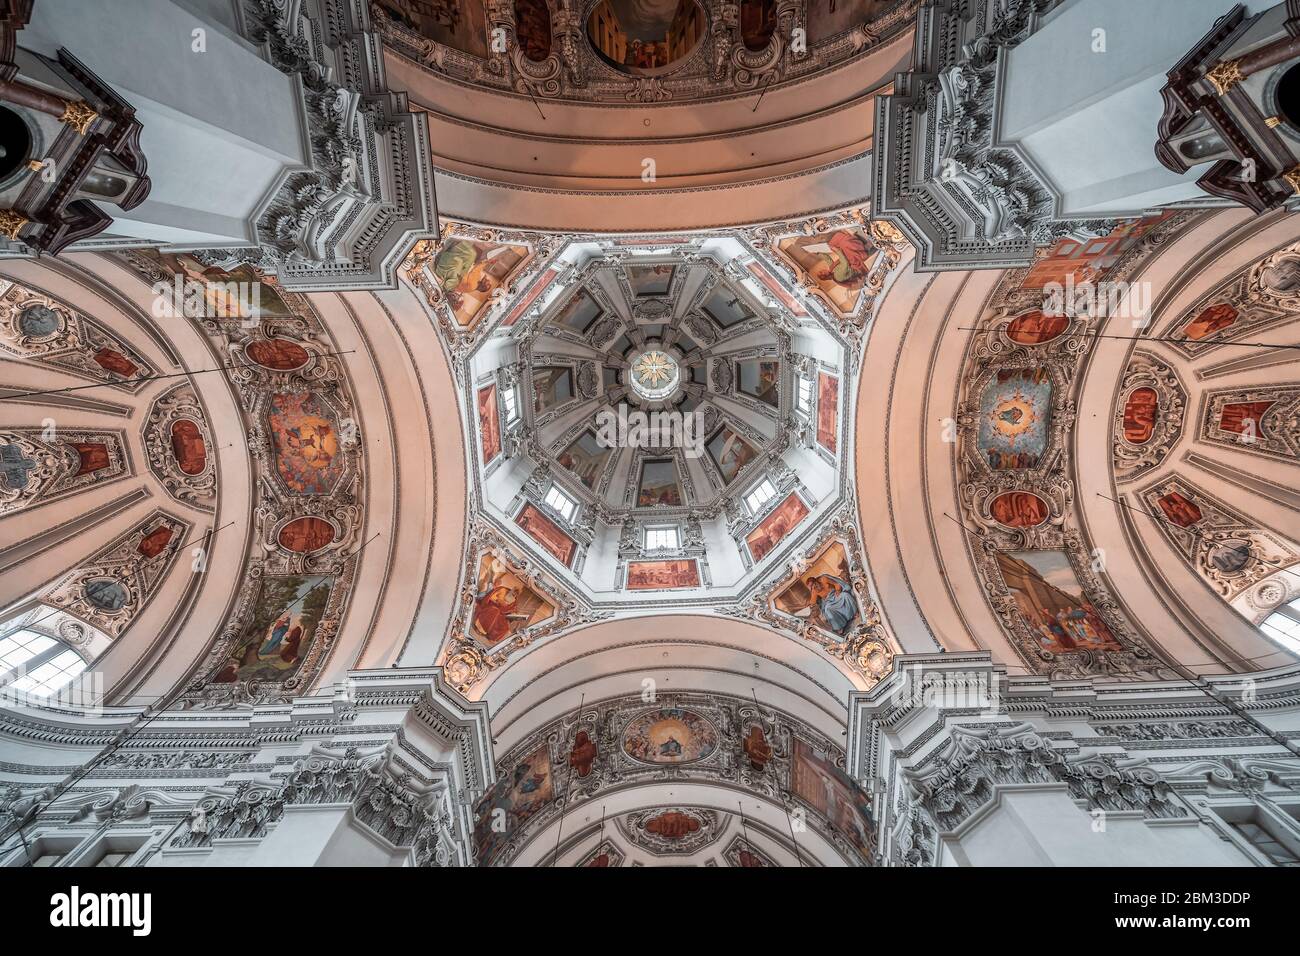 4 febbraio 2020 - Salisburgo, Austria: Angolo di salita del soffitto centrale a cupola affresco e dipinti all'interno della Cattedrale di Salisburgo Foto Stock